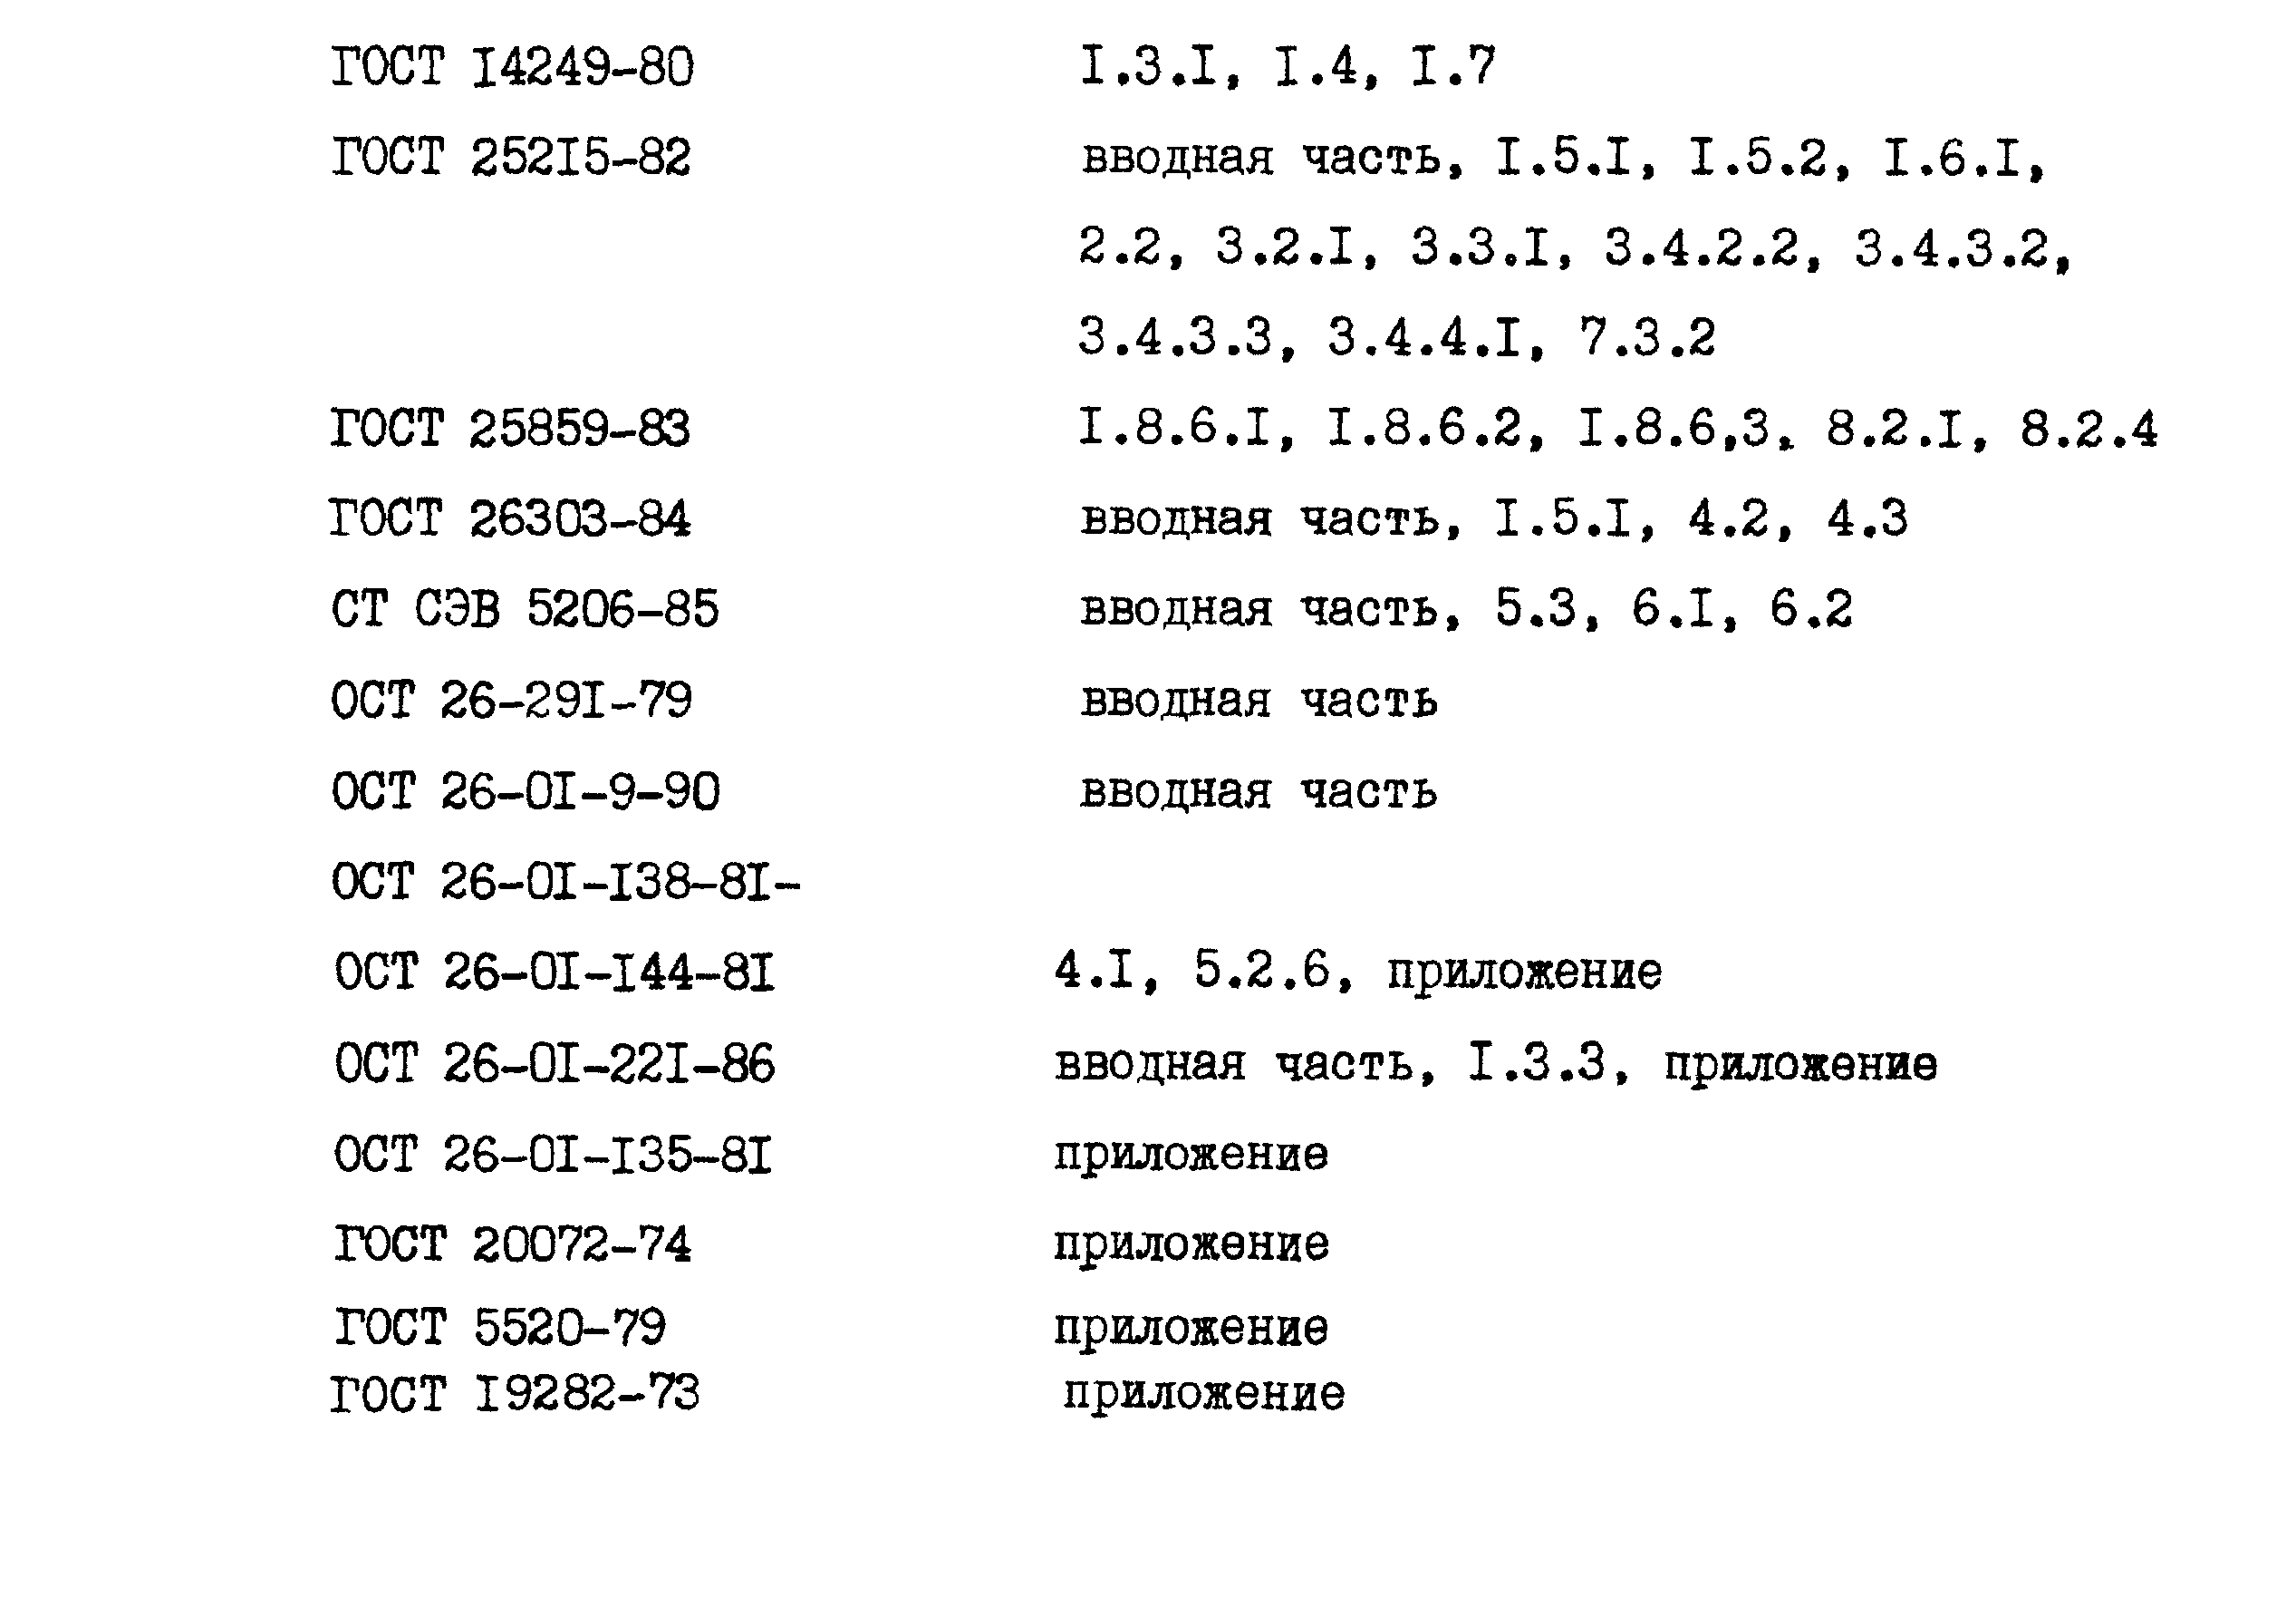 ОСТ 26-1046-87